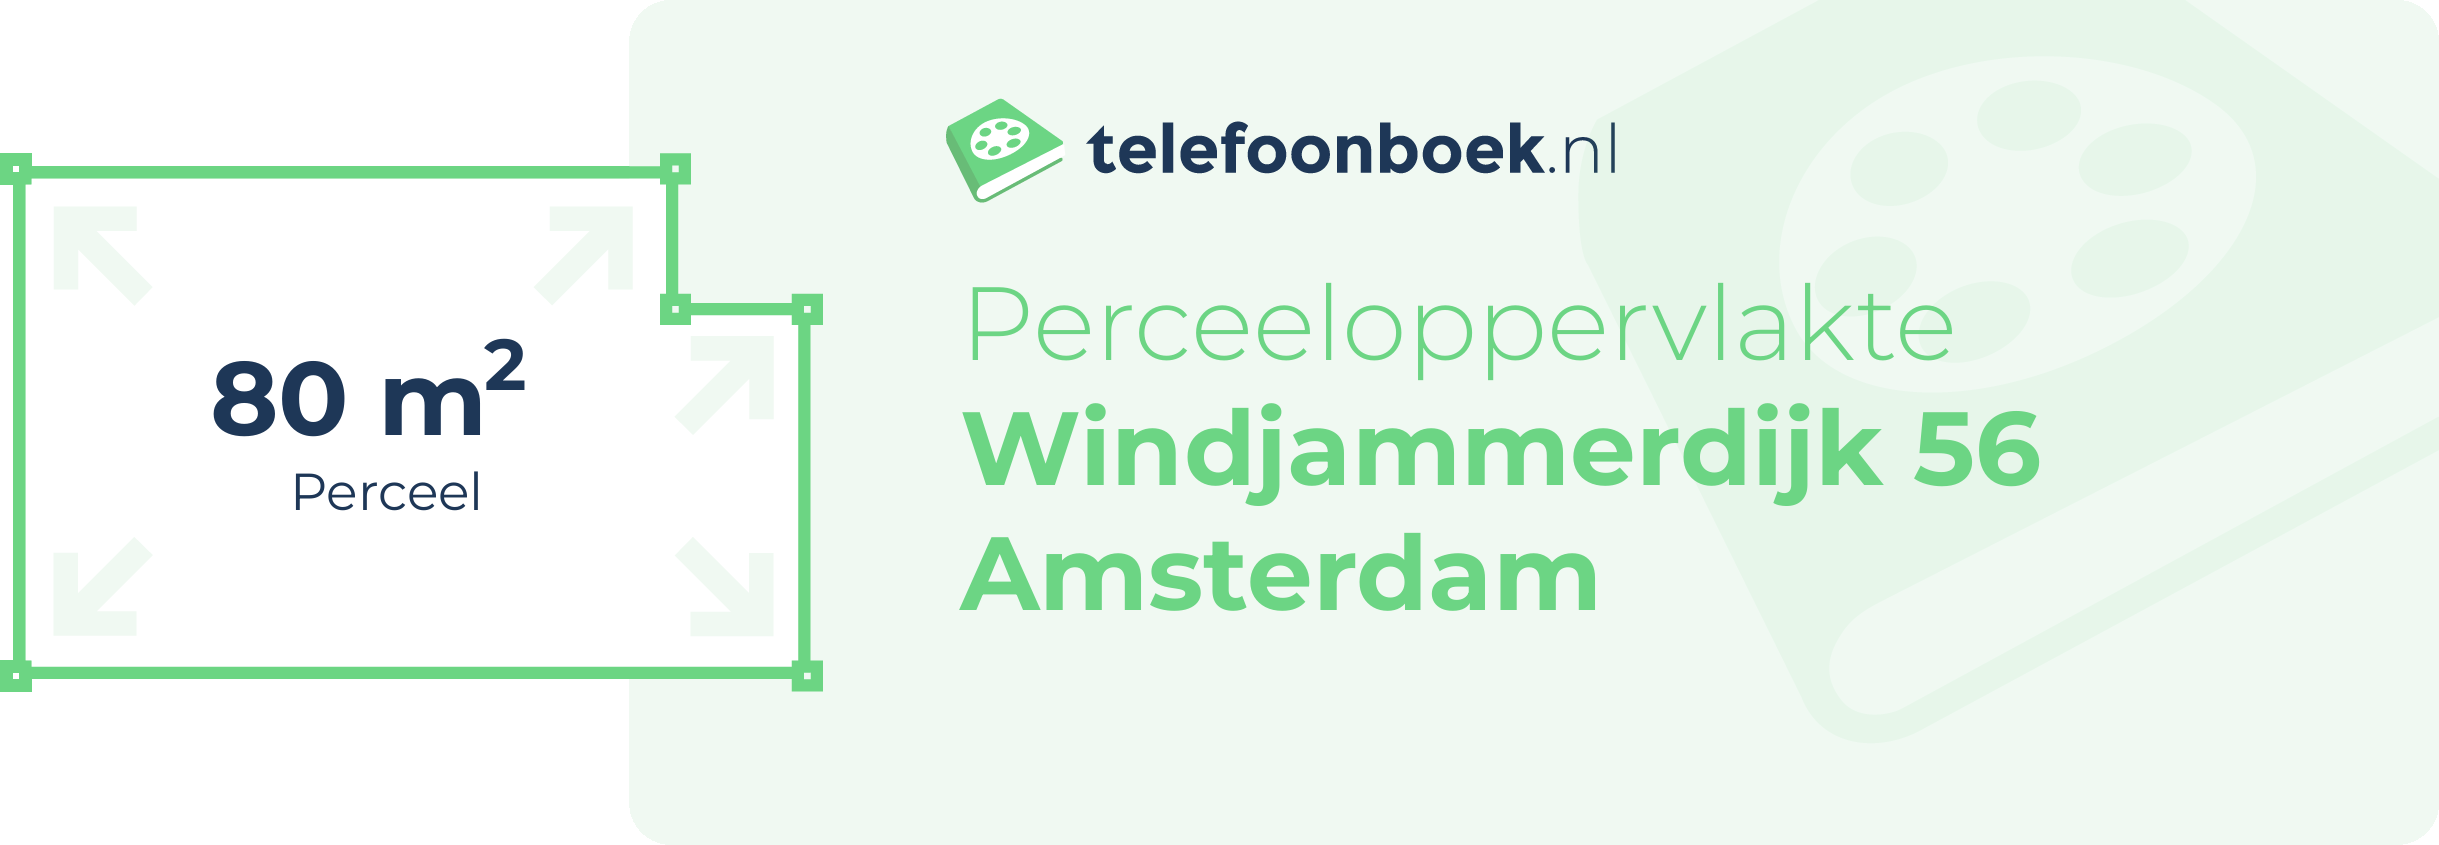 Perceeloppervlakte Windjammerdijk 56 Amsterdam